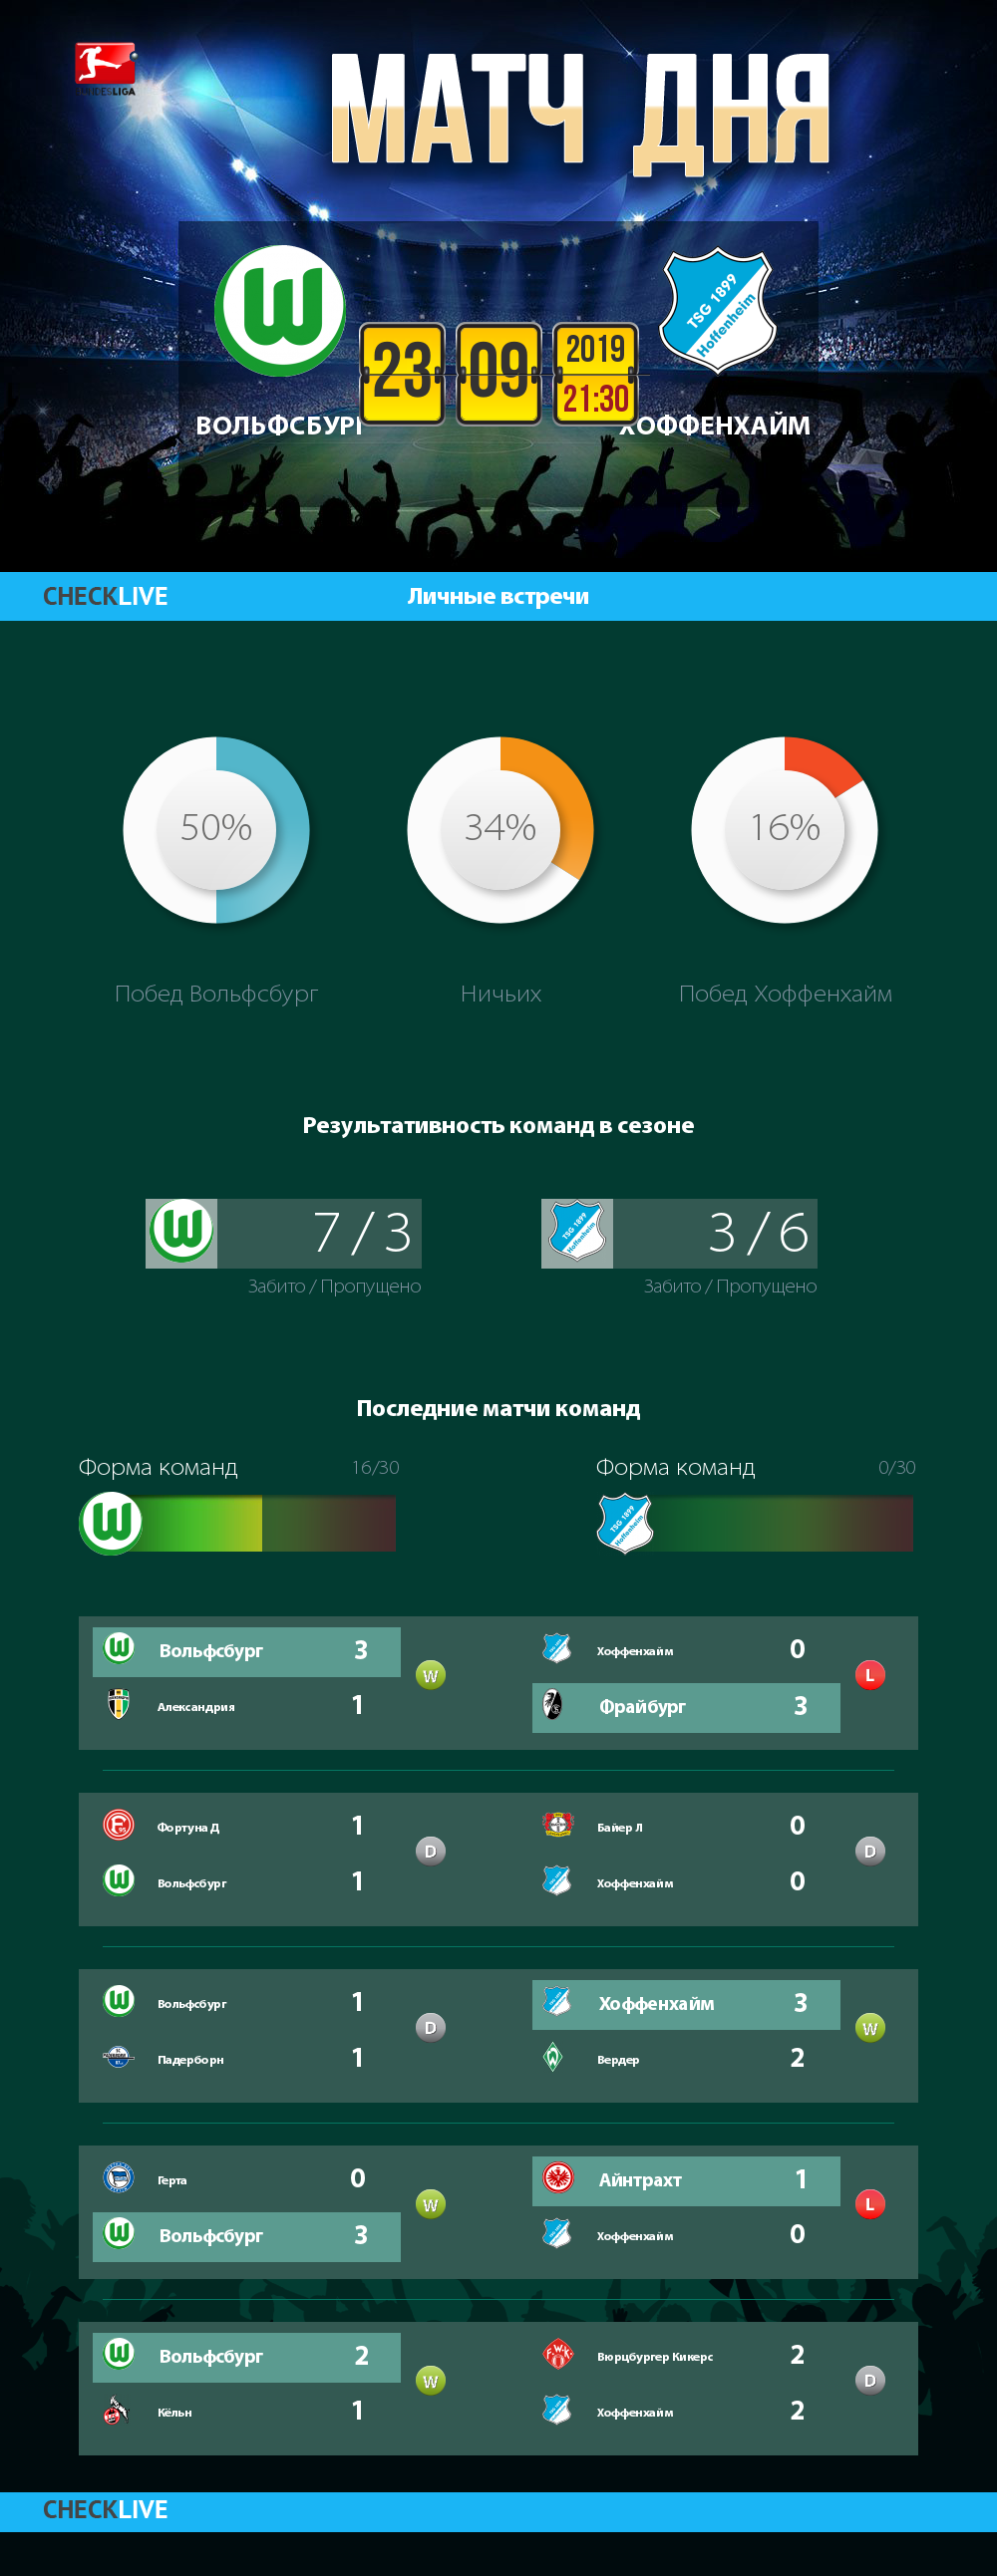 Инфографика Вольфсбург и Хоффенхайм матч дня 23.09.2019